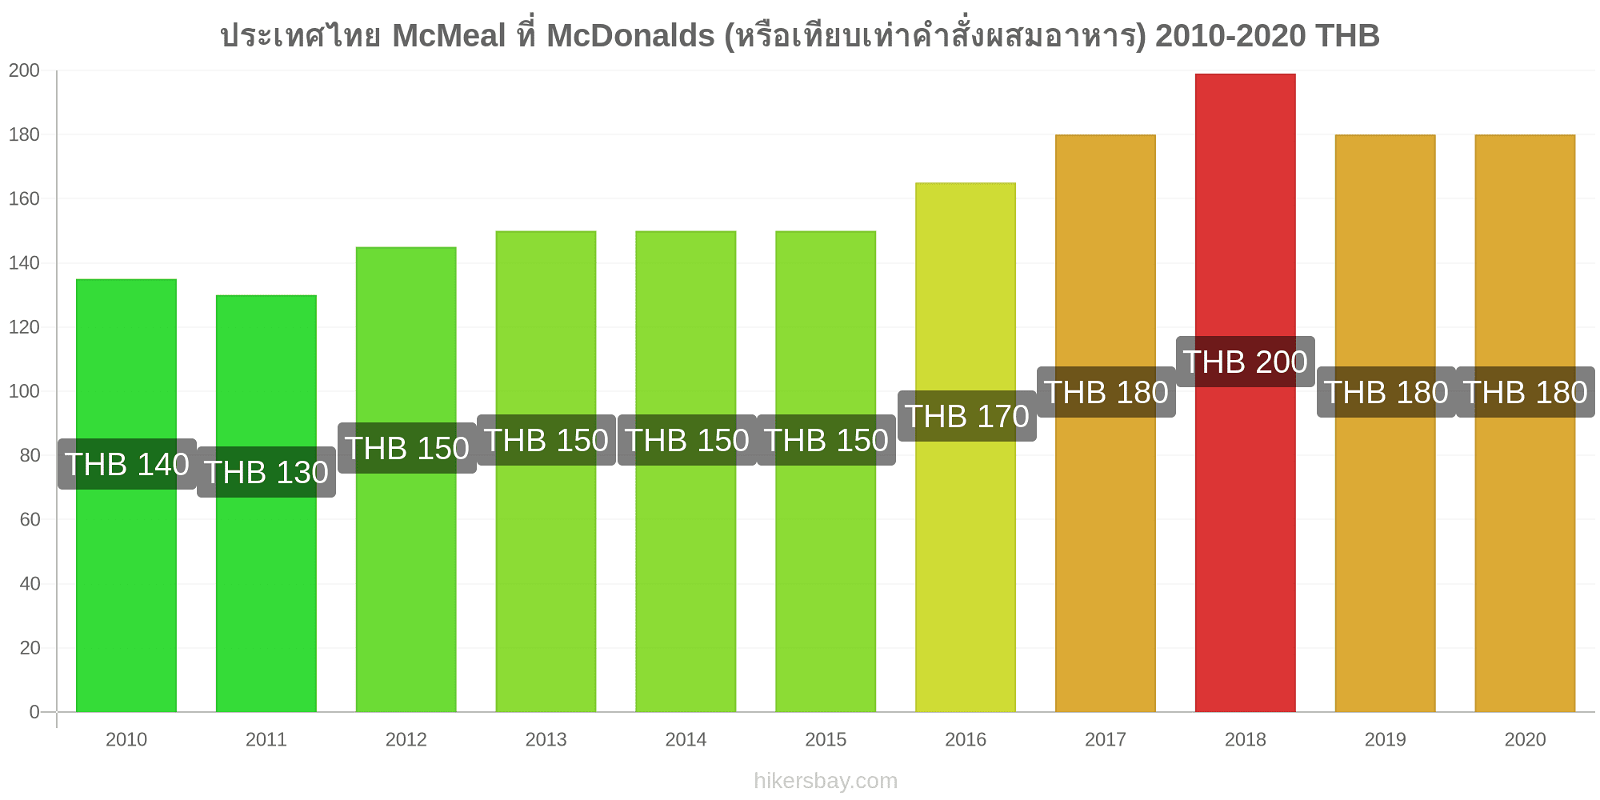 ประเทศไทย การเปลี่ยนแปลงราคา McMeal ที่ McDonalds (หรือเทียบเท่าคำสั่งผสมอาหาร) hikersbay.com